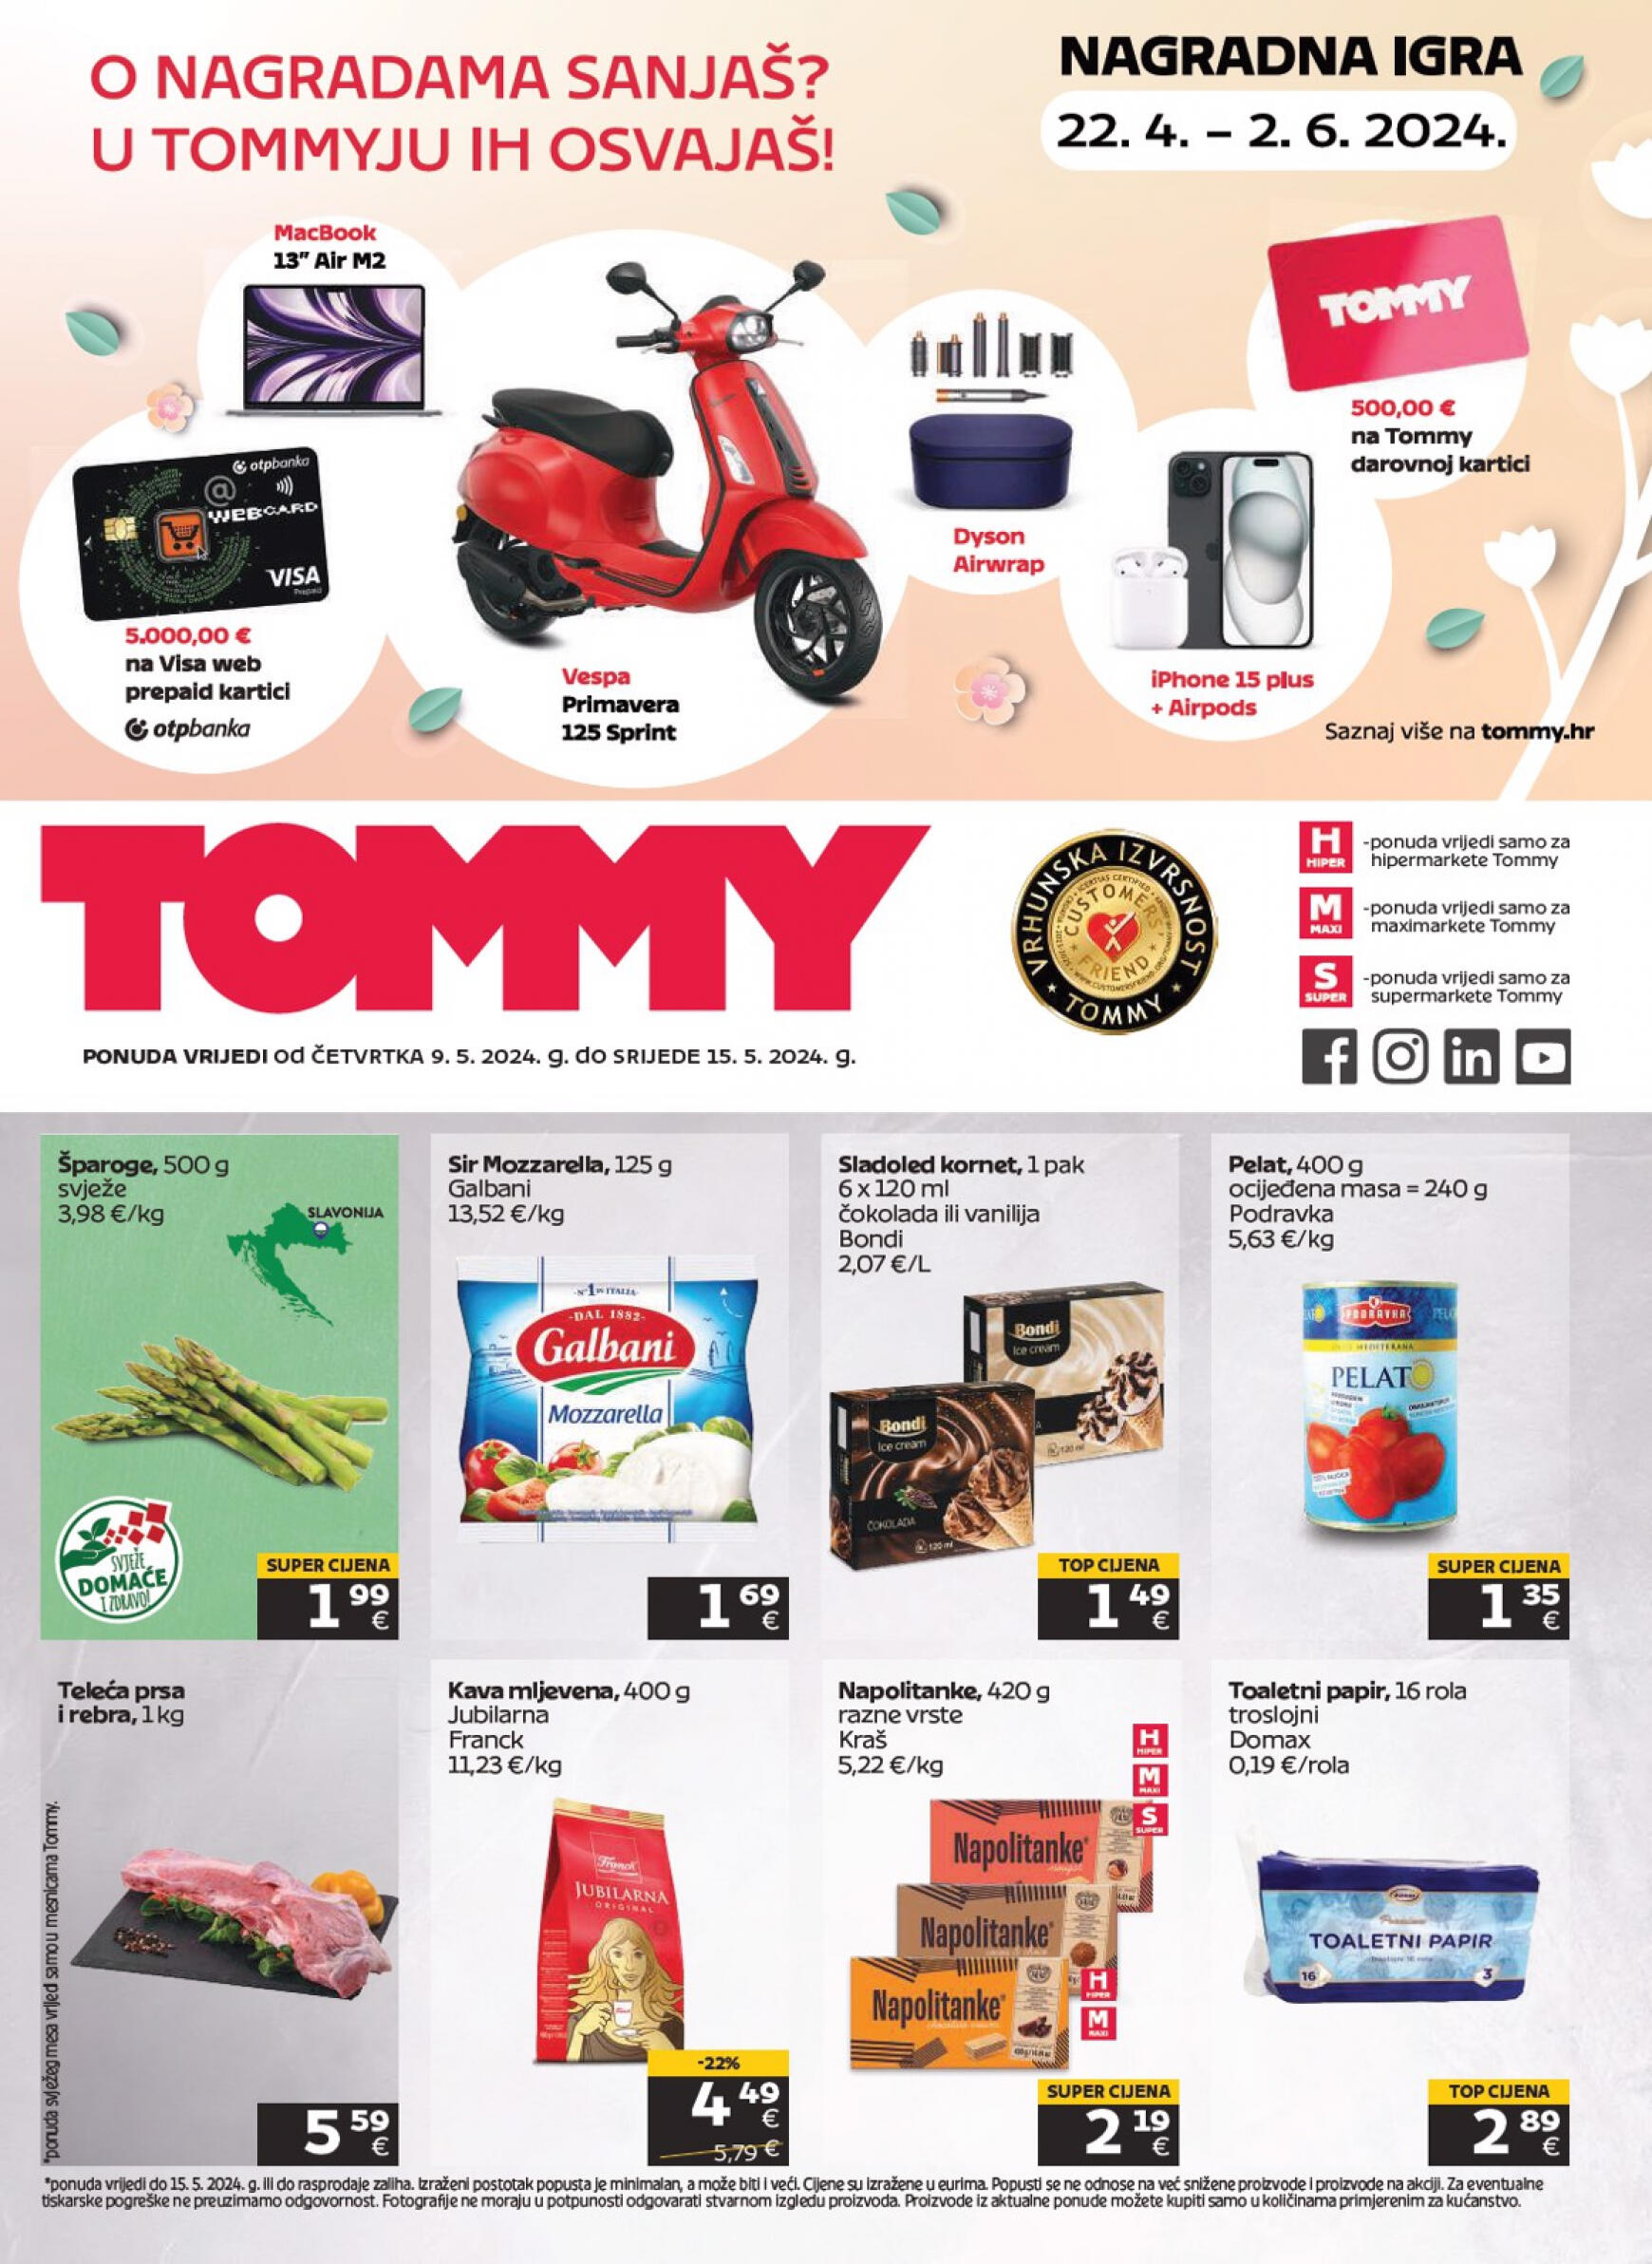 tommy - Novi katalog Tommy - Akcijski katalog 22.04. - 02.06. - page: 1